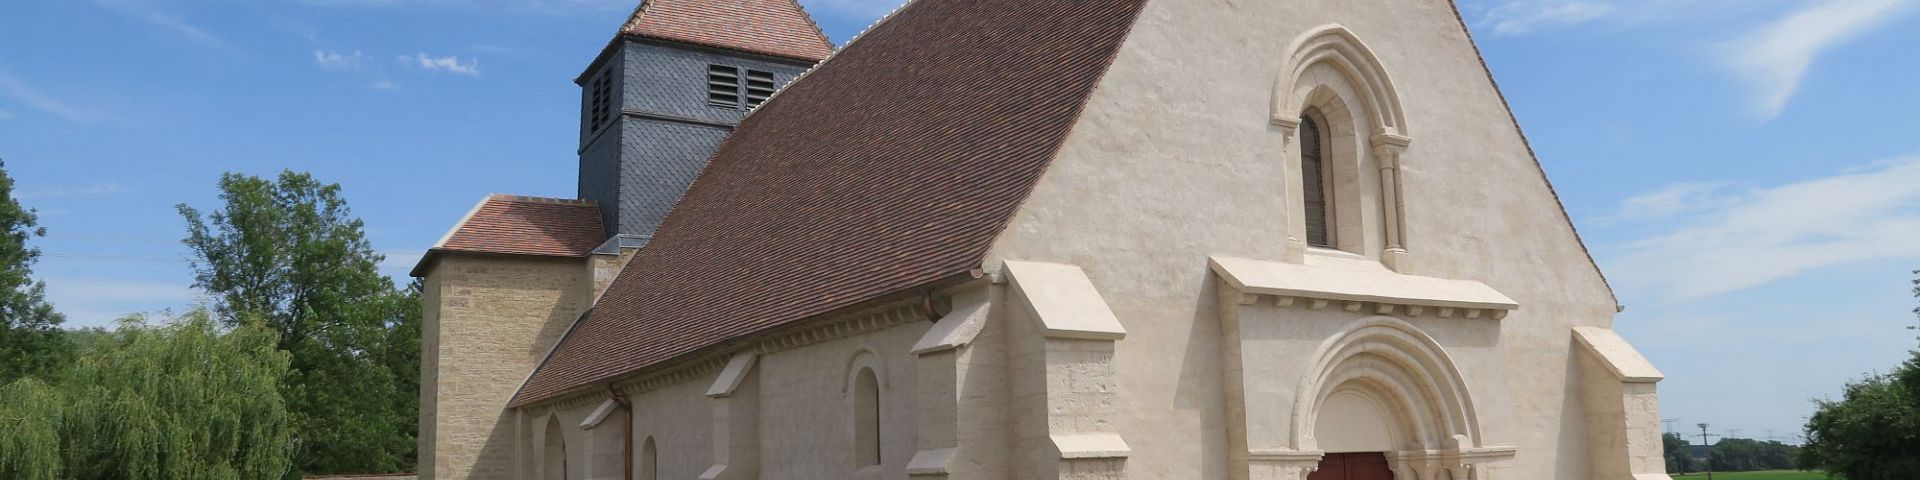 Villy-le-Moutier - Eglise Saint-Révérien (21)